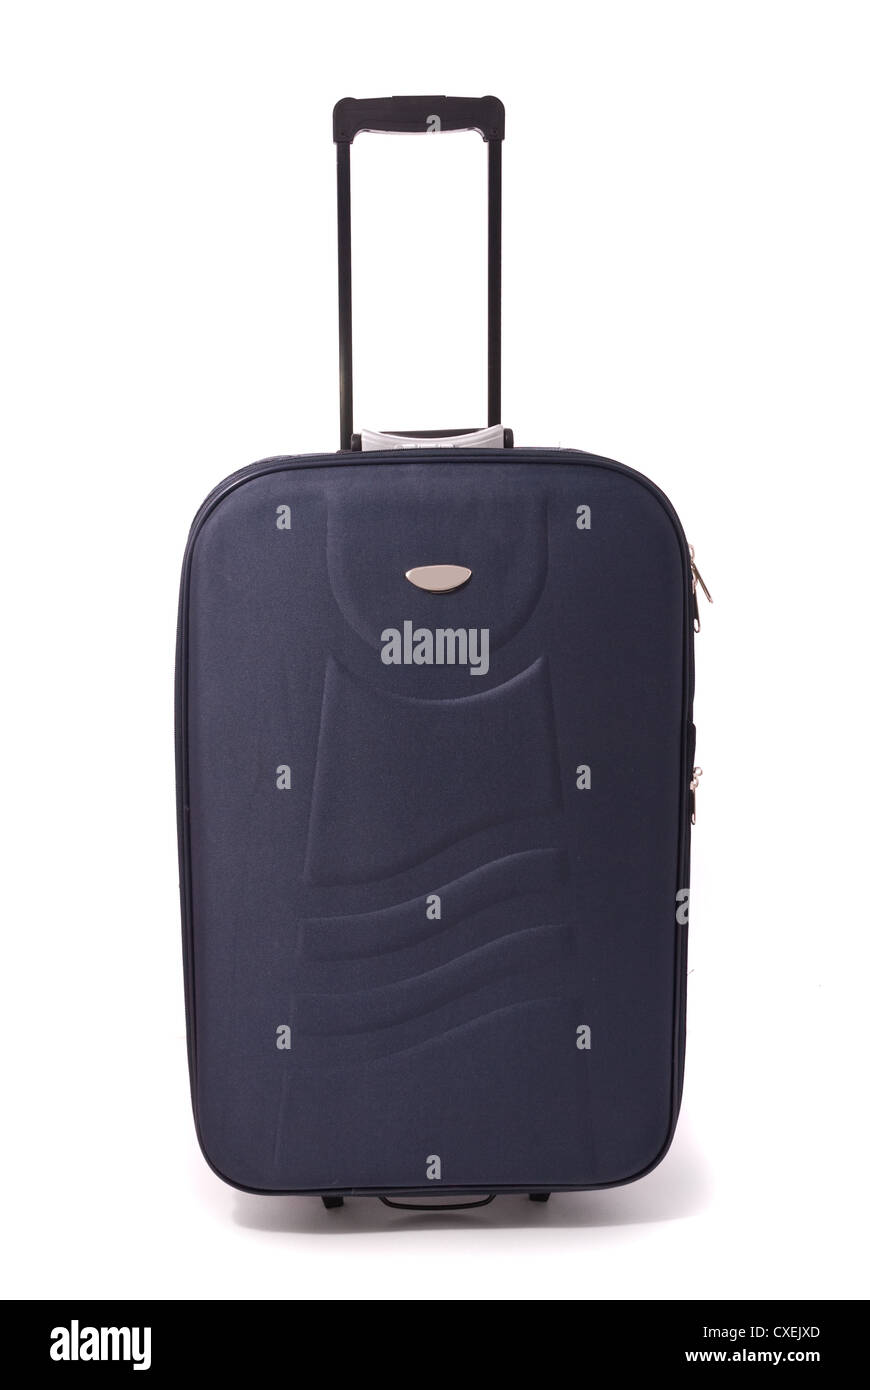 Travel bag isolated on white background Stock Photo